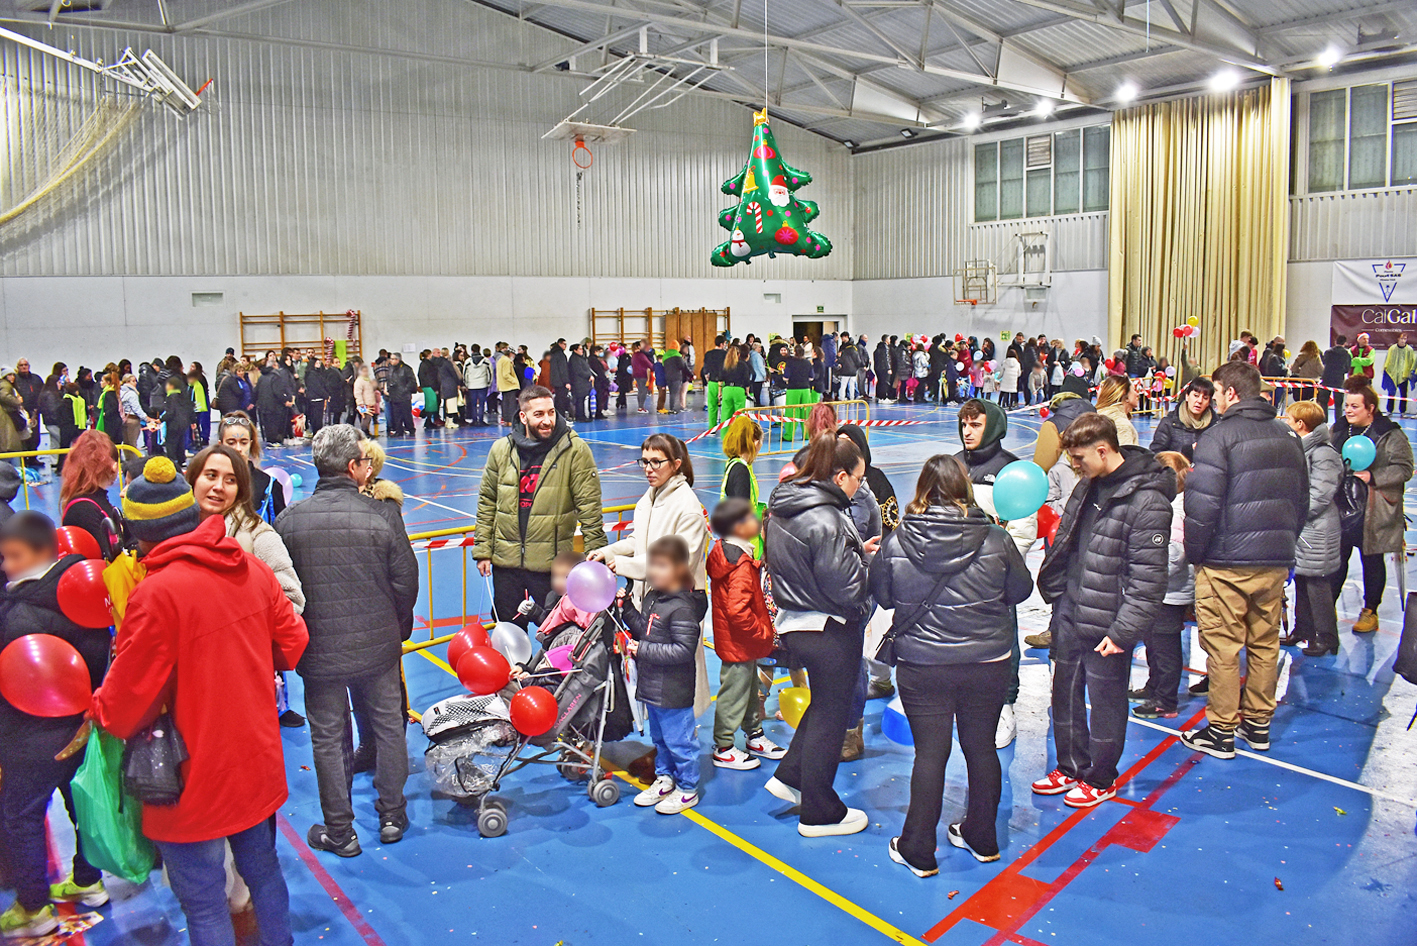 Circuit de visita al PavellÃ³ Municipal d'Esports durant la recepciÃ³ dels Reis d'Orient als infants de la vila.